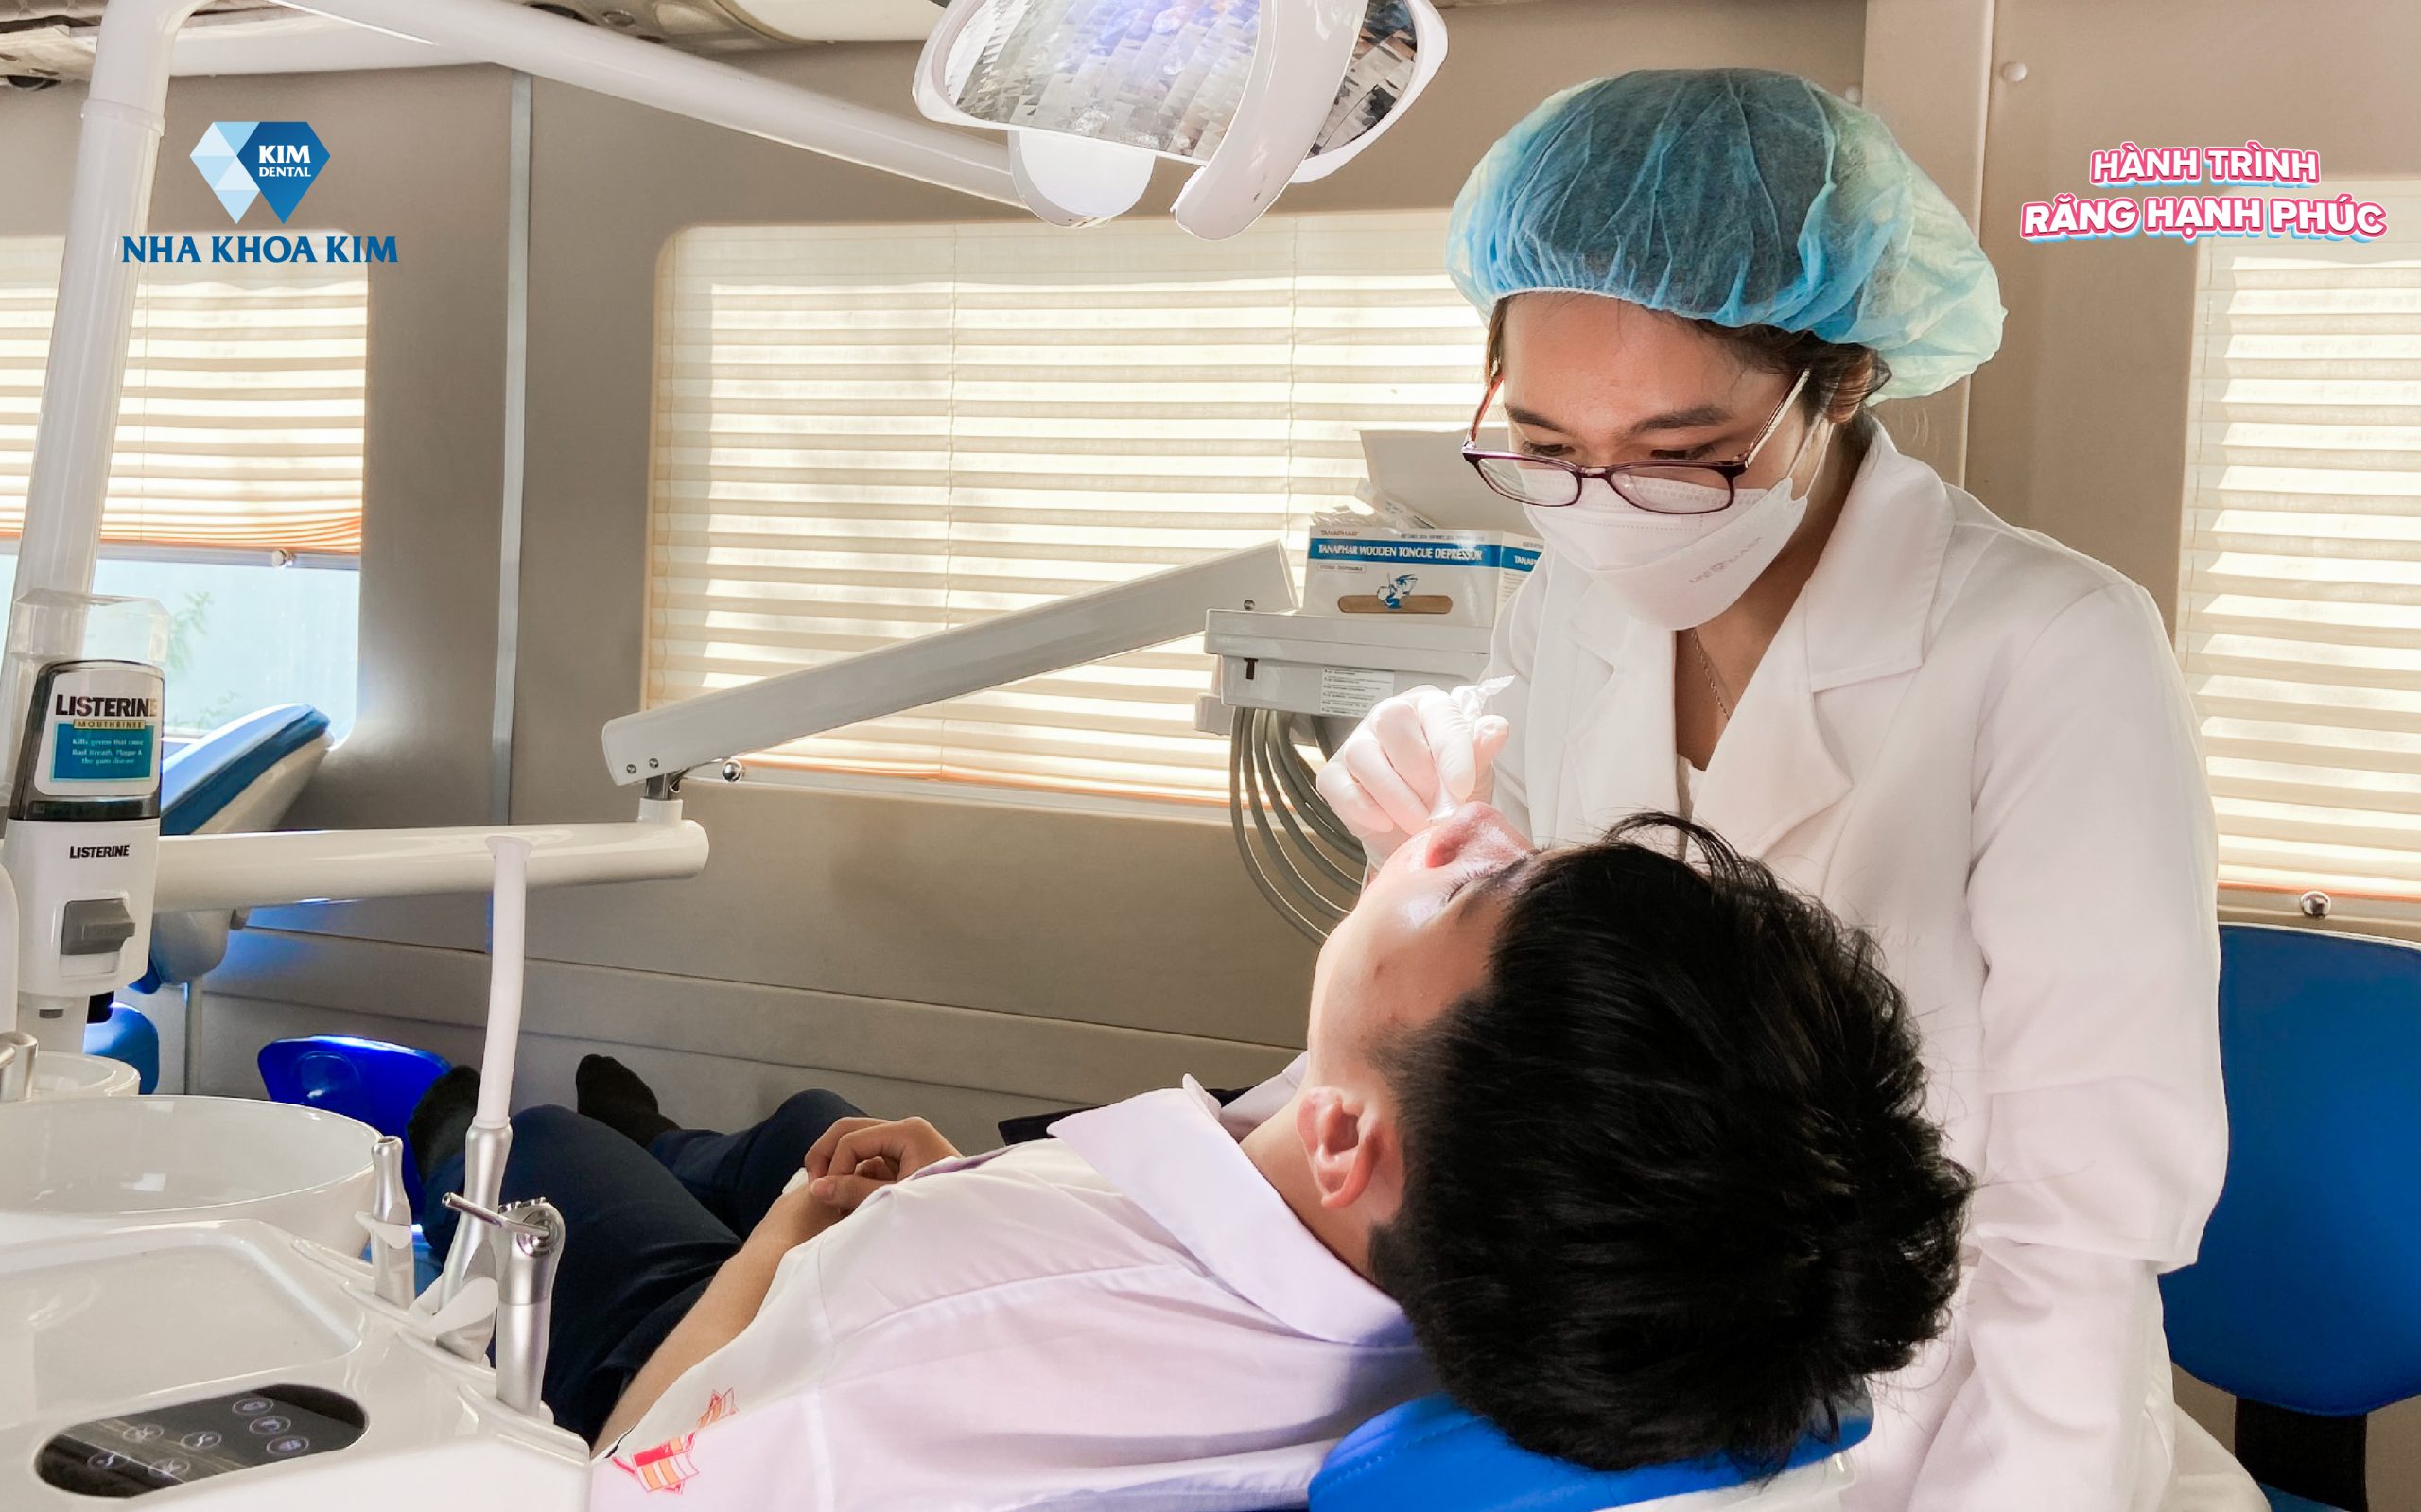 Dental Tour Hành trình răng hạnh phúc Nha Khoa Kim